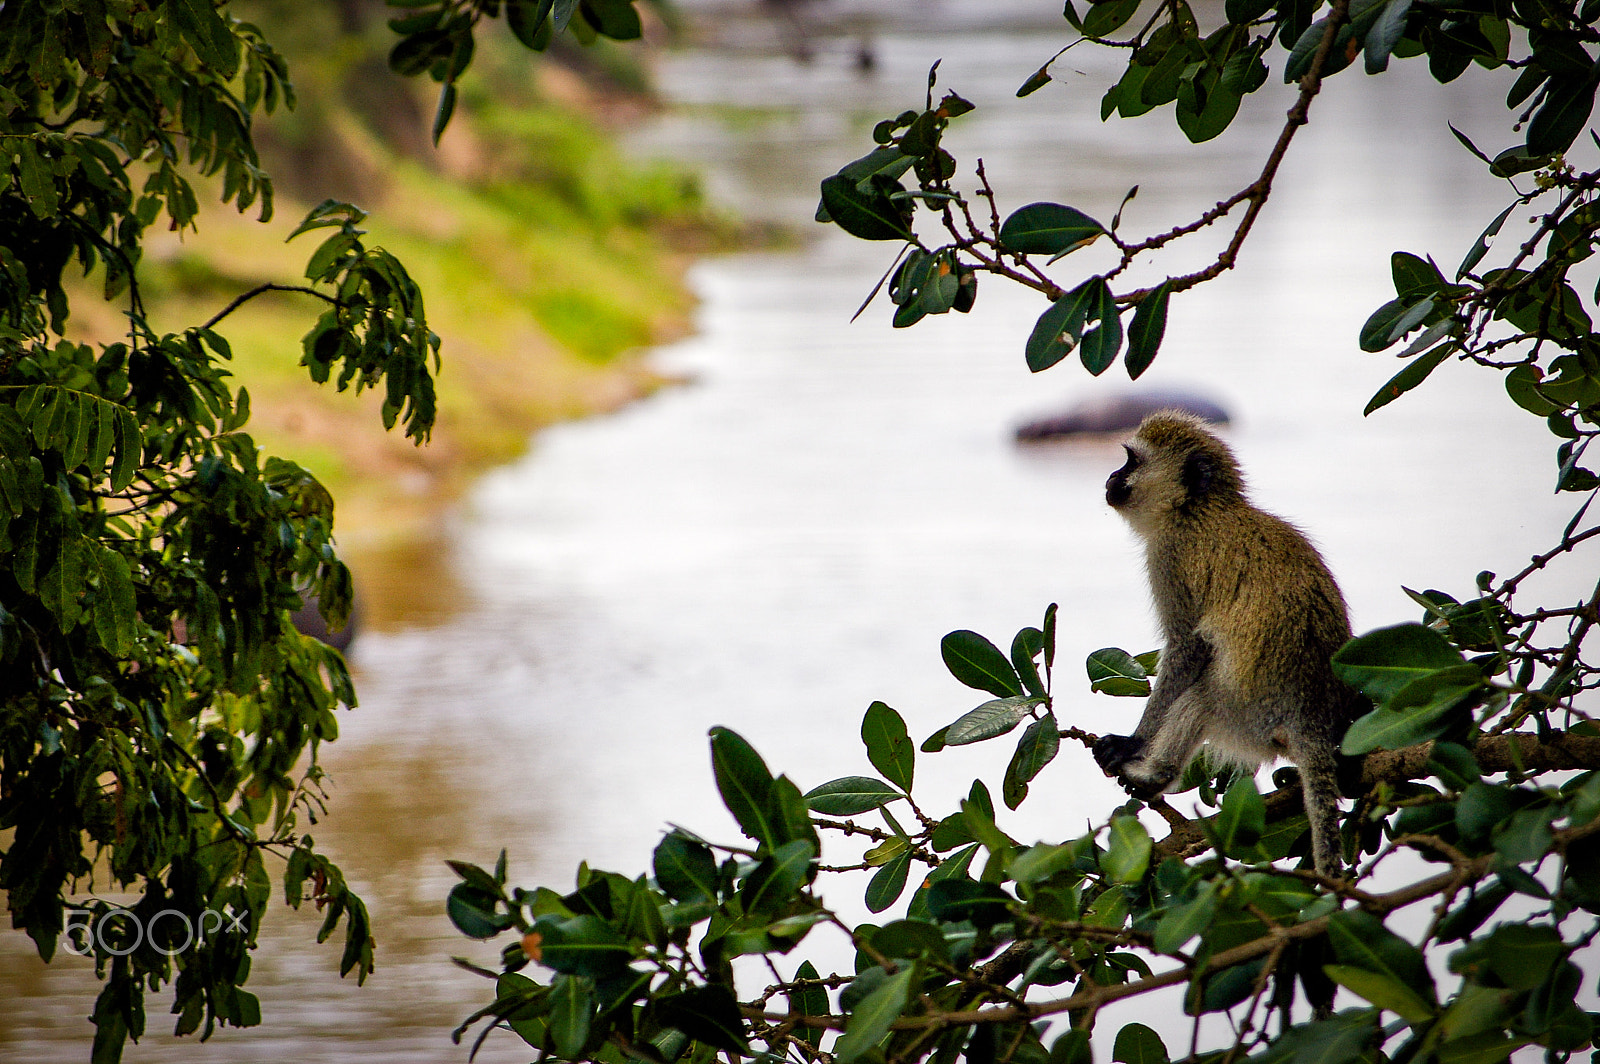 Pentax K100D + Pentax smc DA 50-200mm F4-5.6 ED sample photo. A monkey in the maasai mara, kenya photography